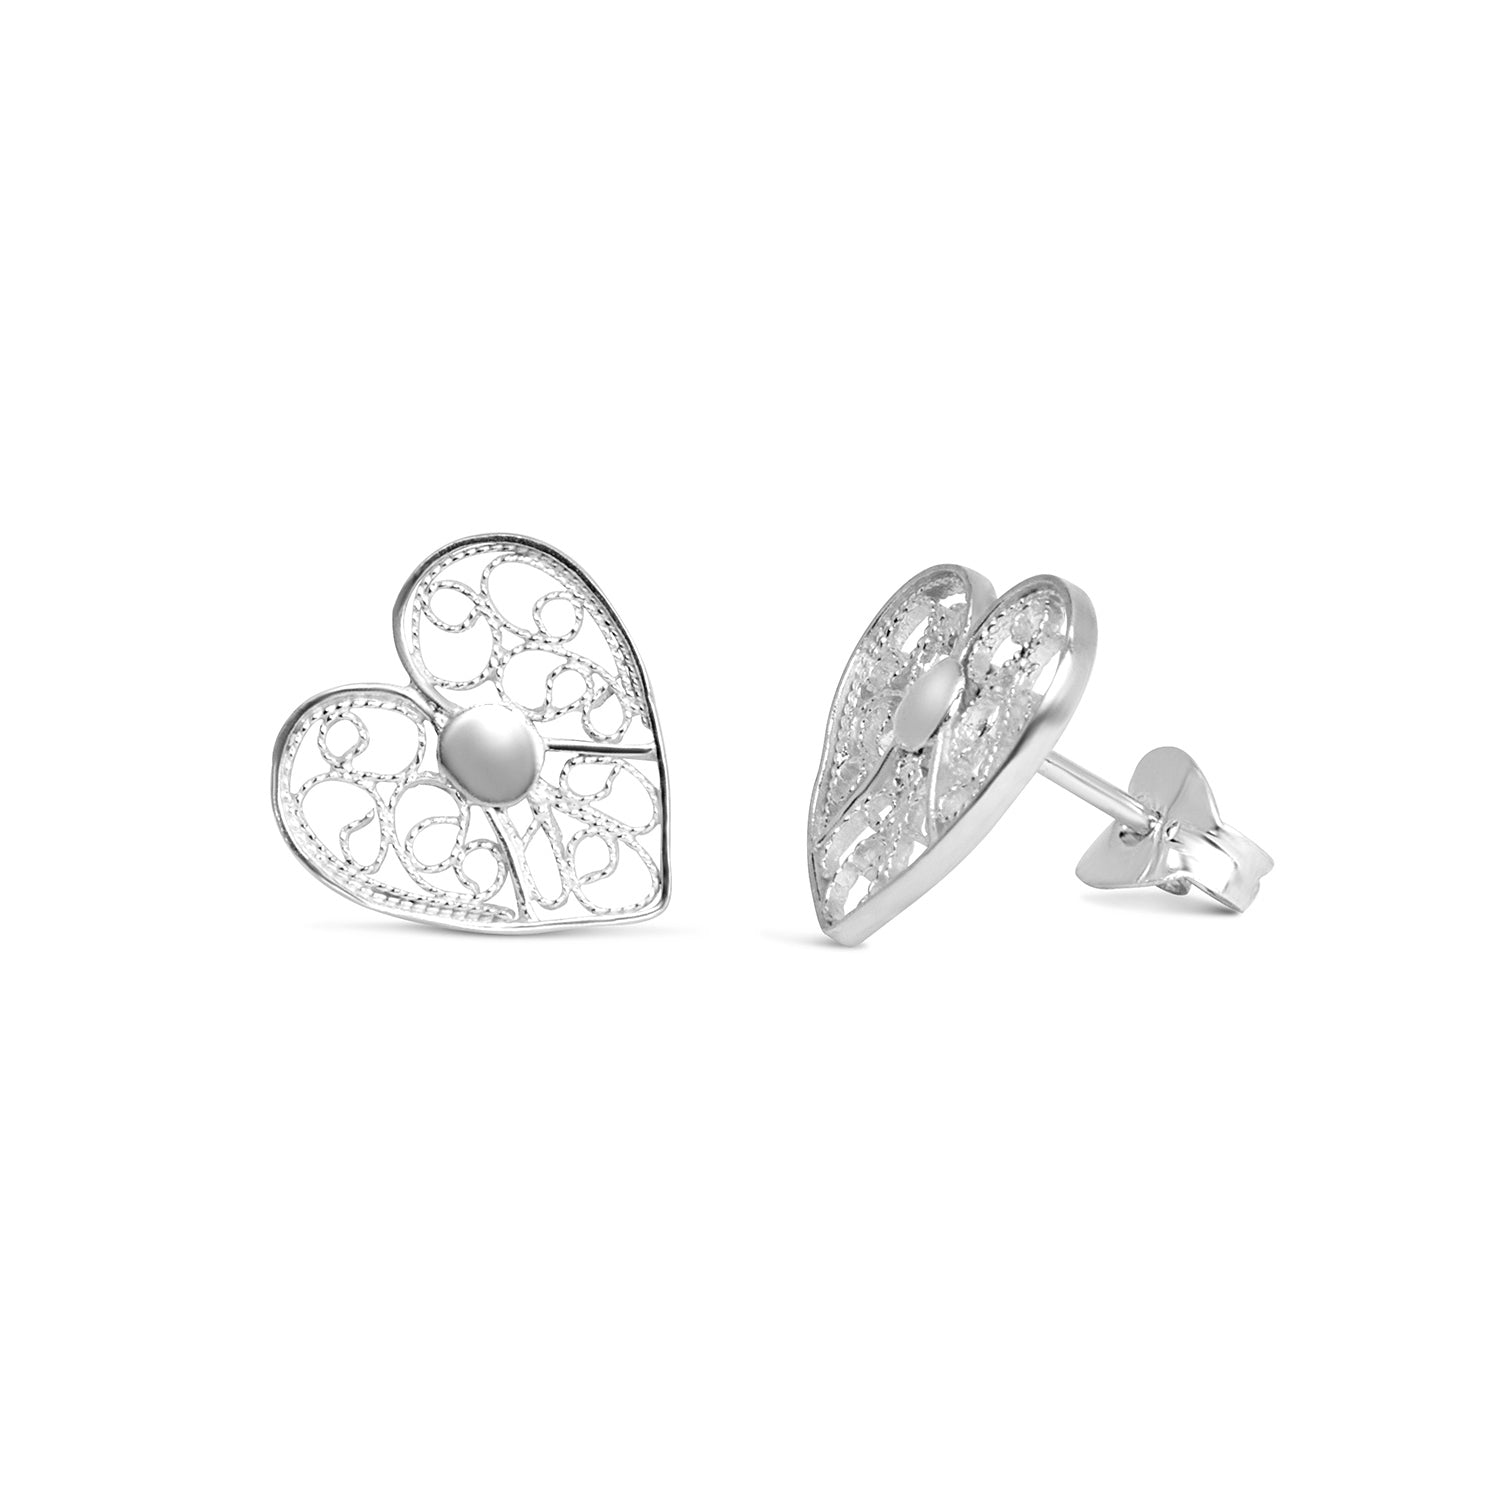 Heart Stud Earrings. Silver